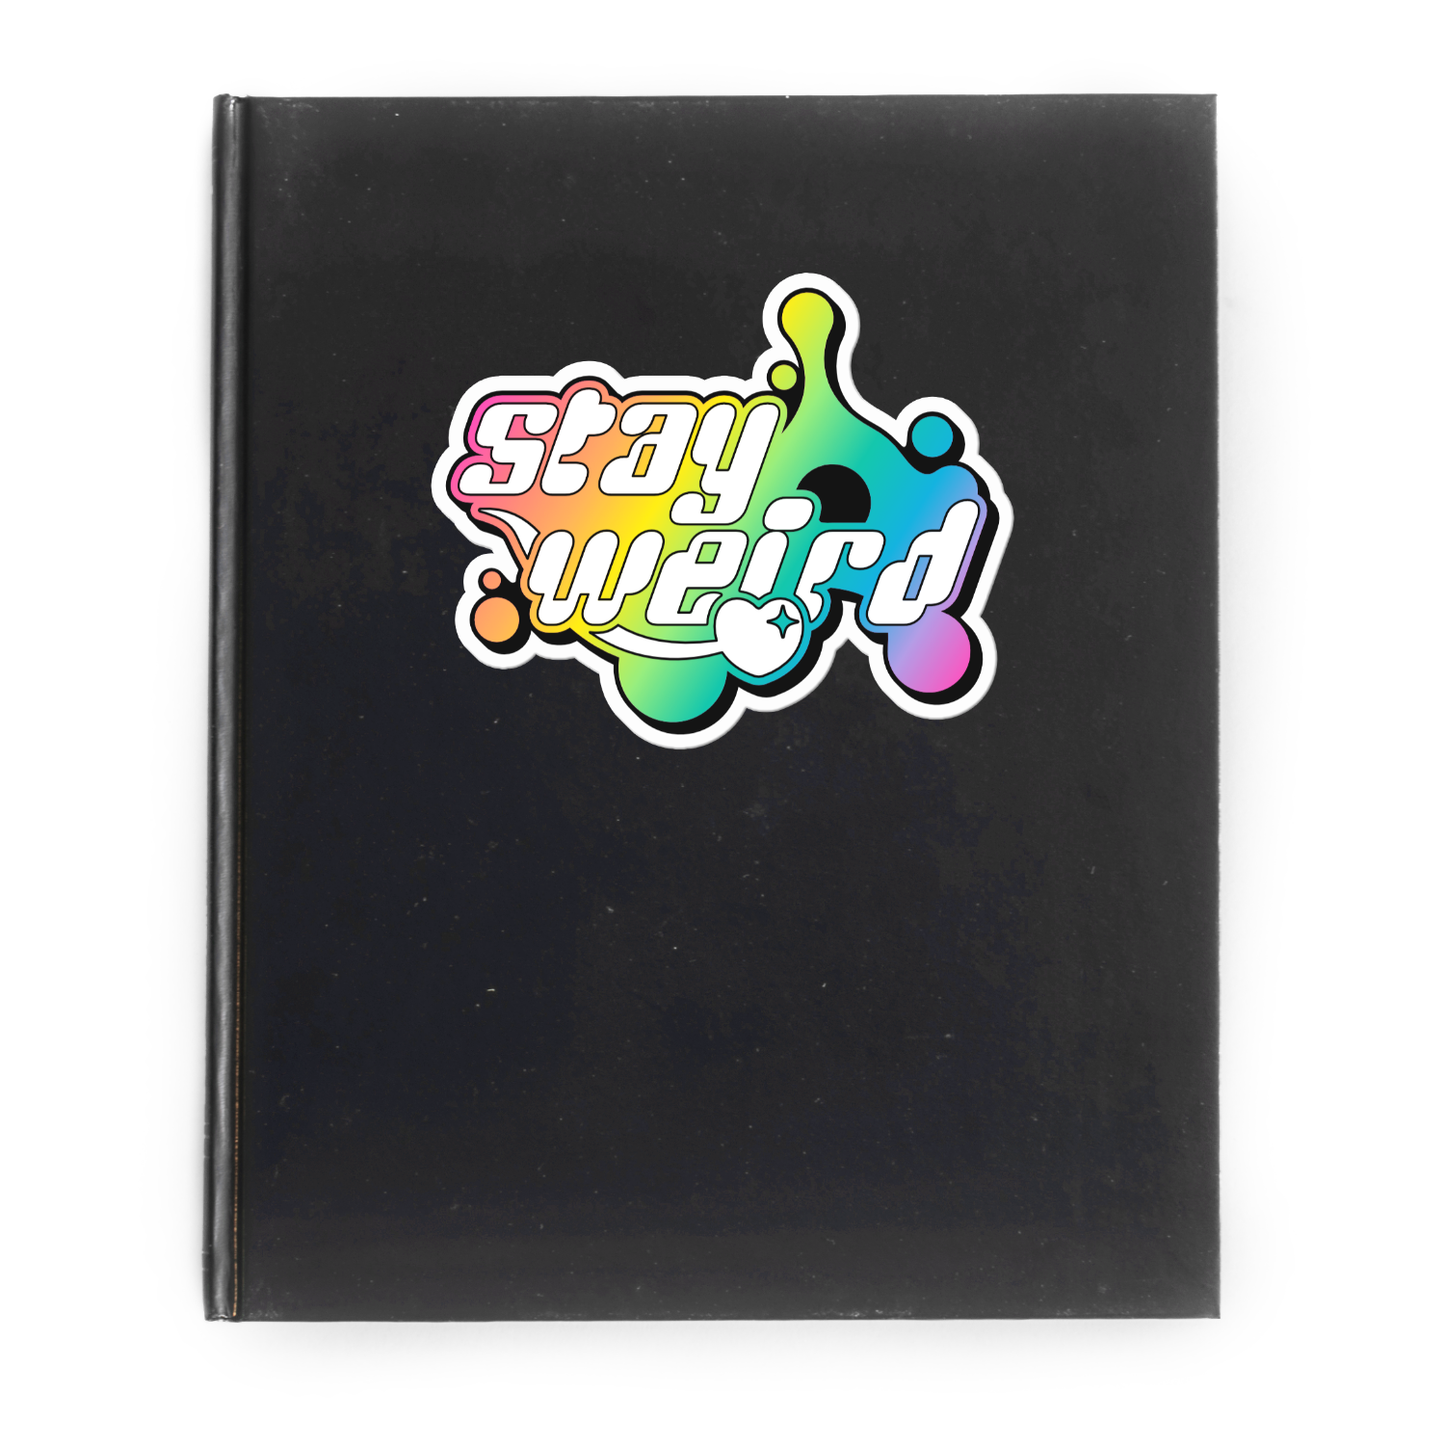 Stay Weird (Rainbow version) Vinyl Sticker